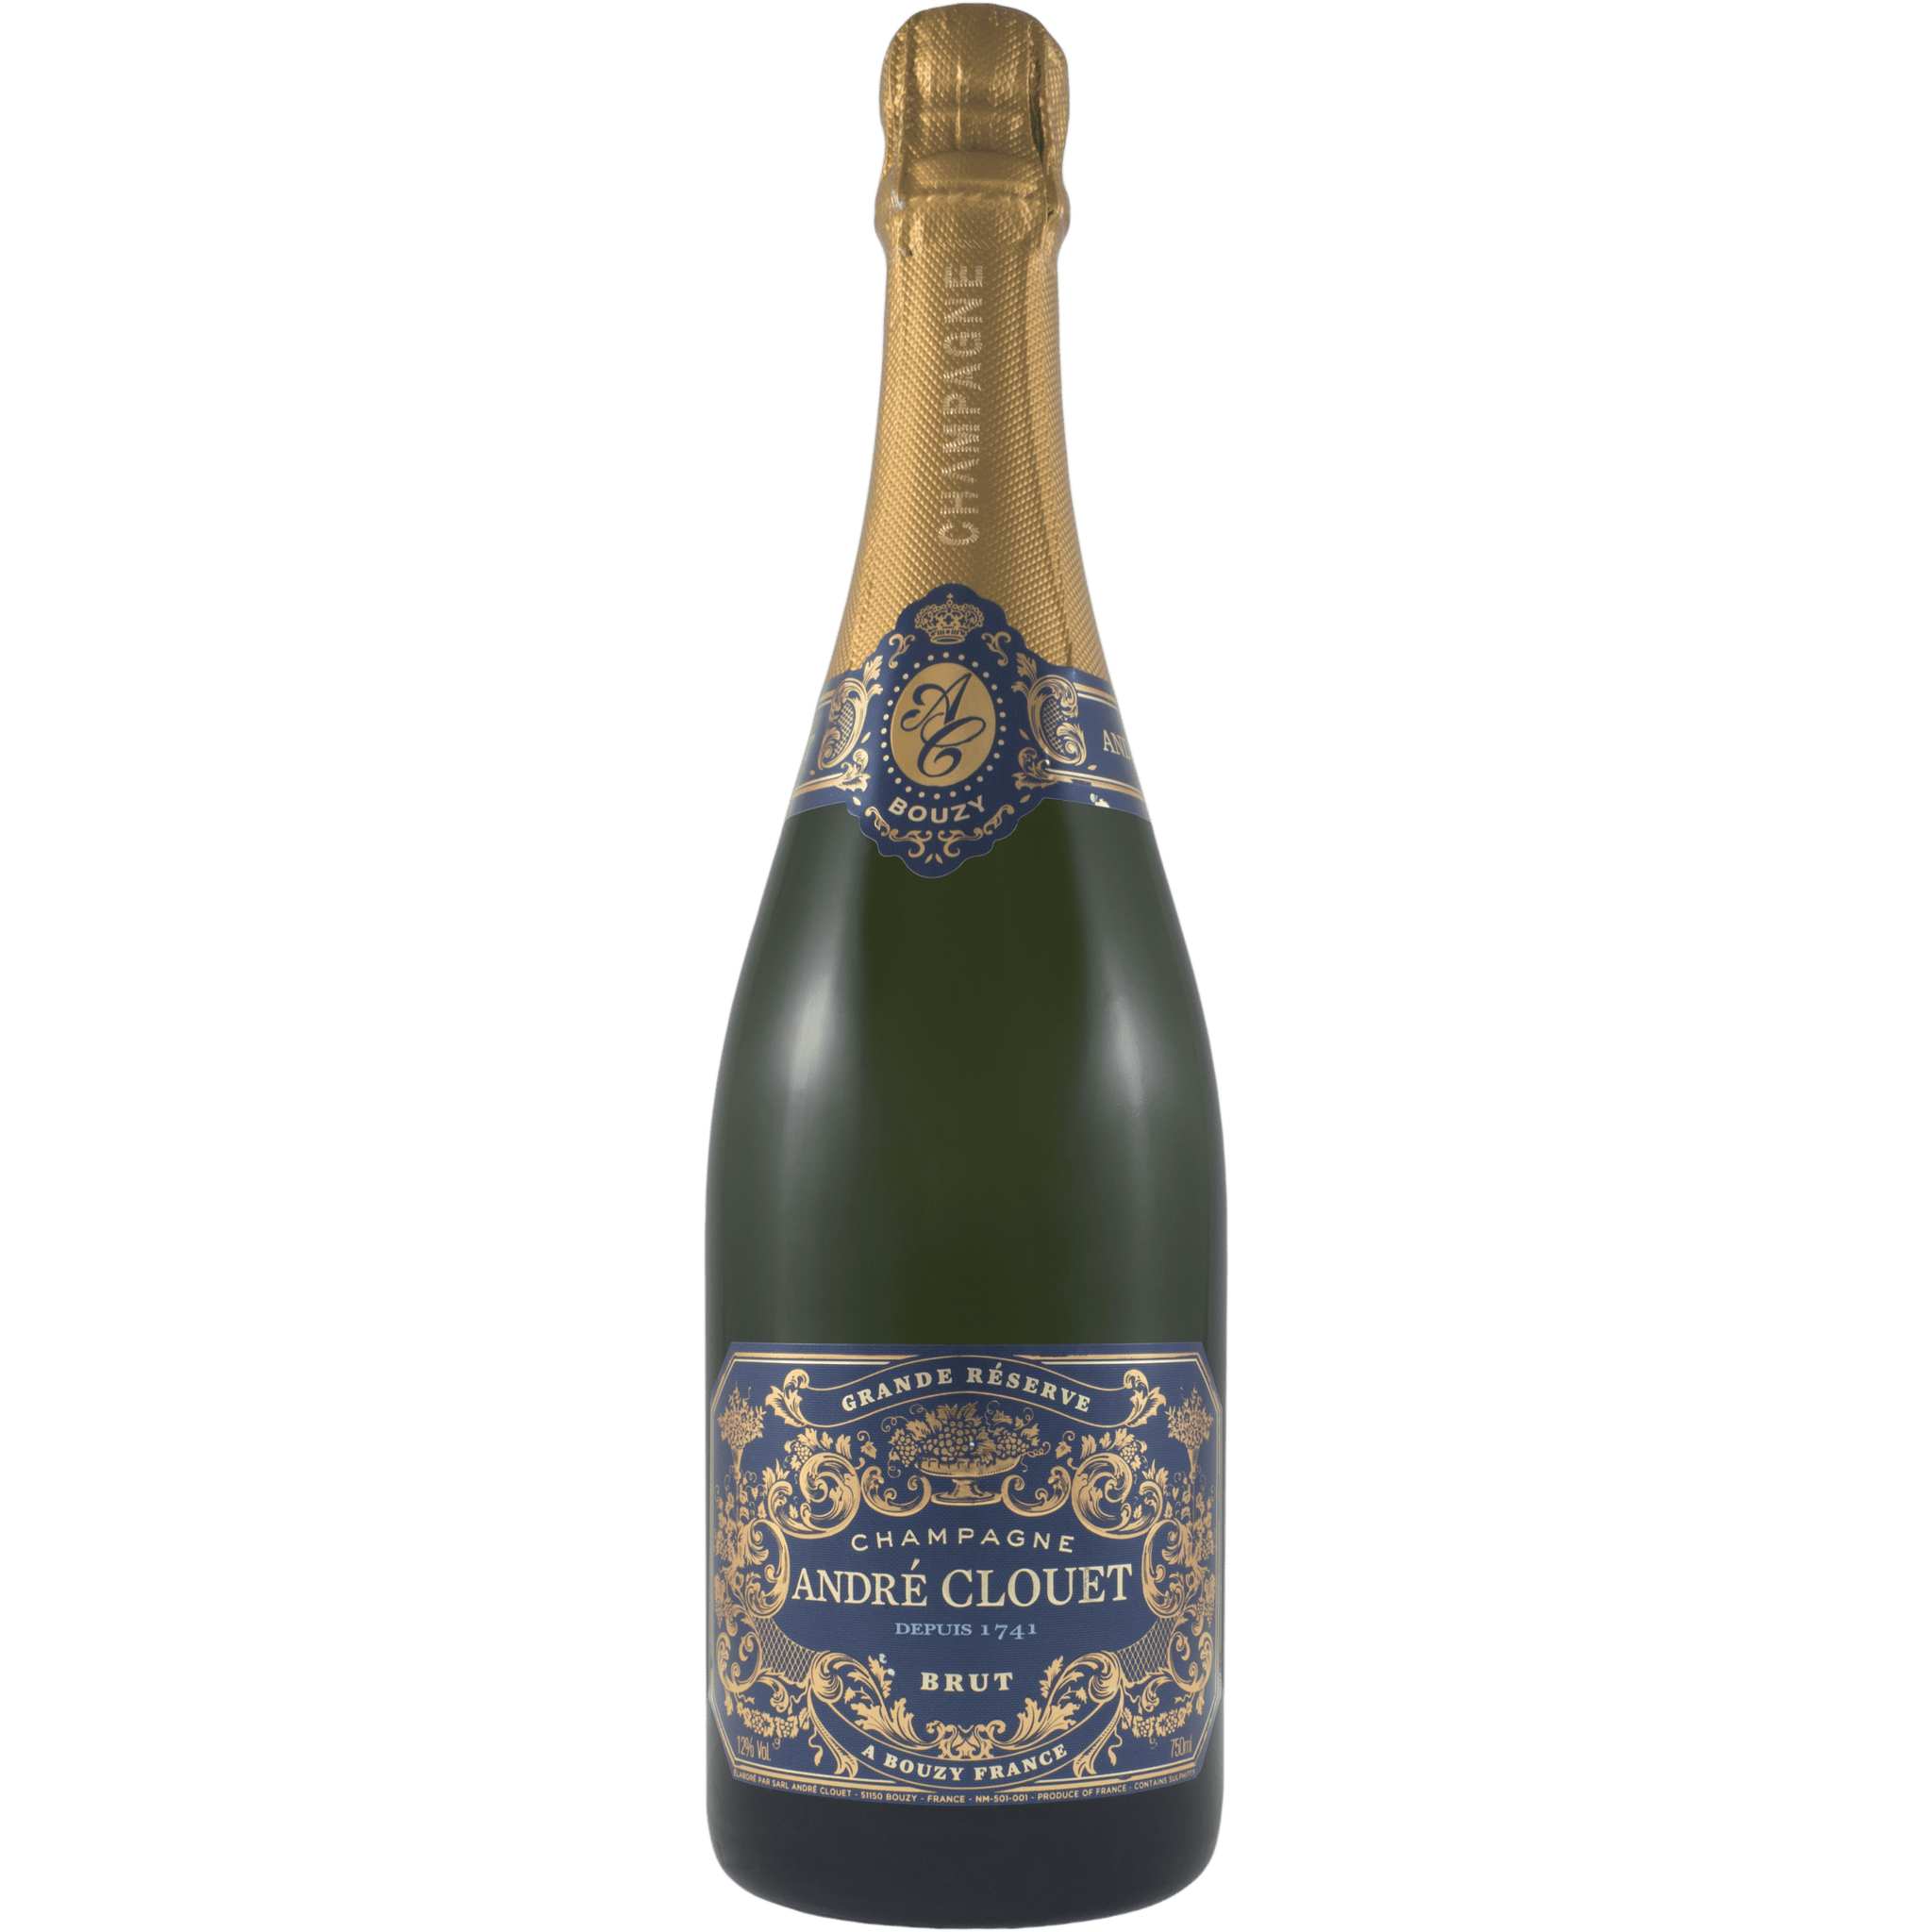 Andre Clouet Grande Reserve Brut Champagne NV